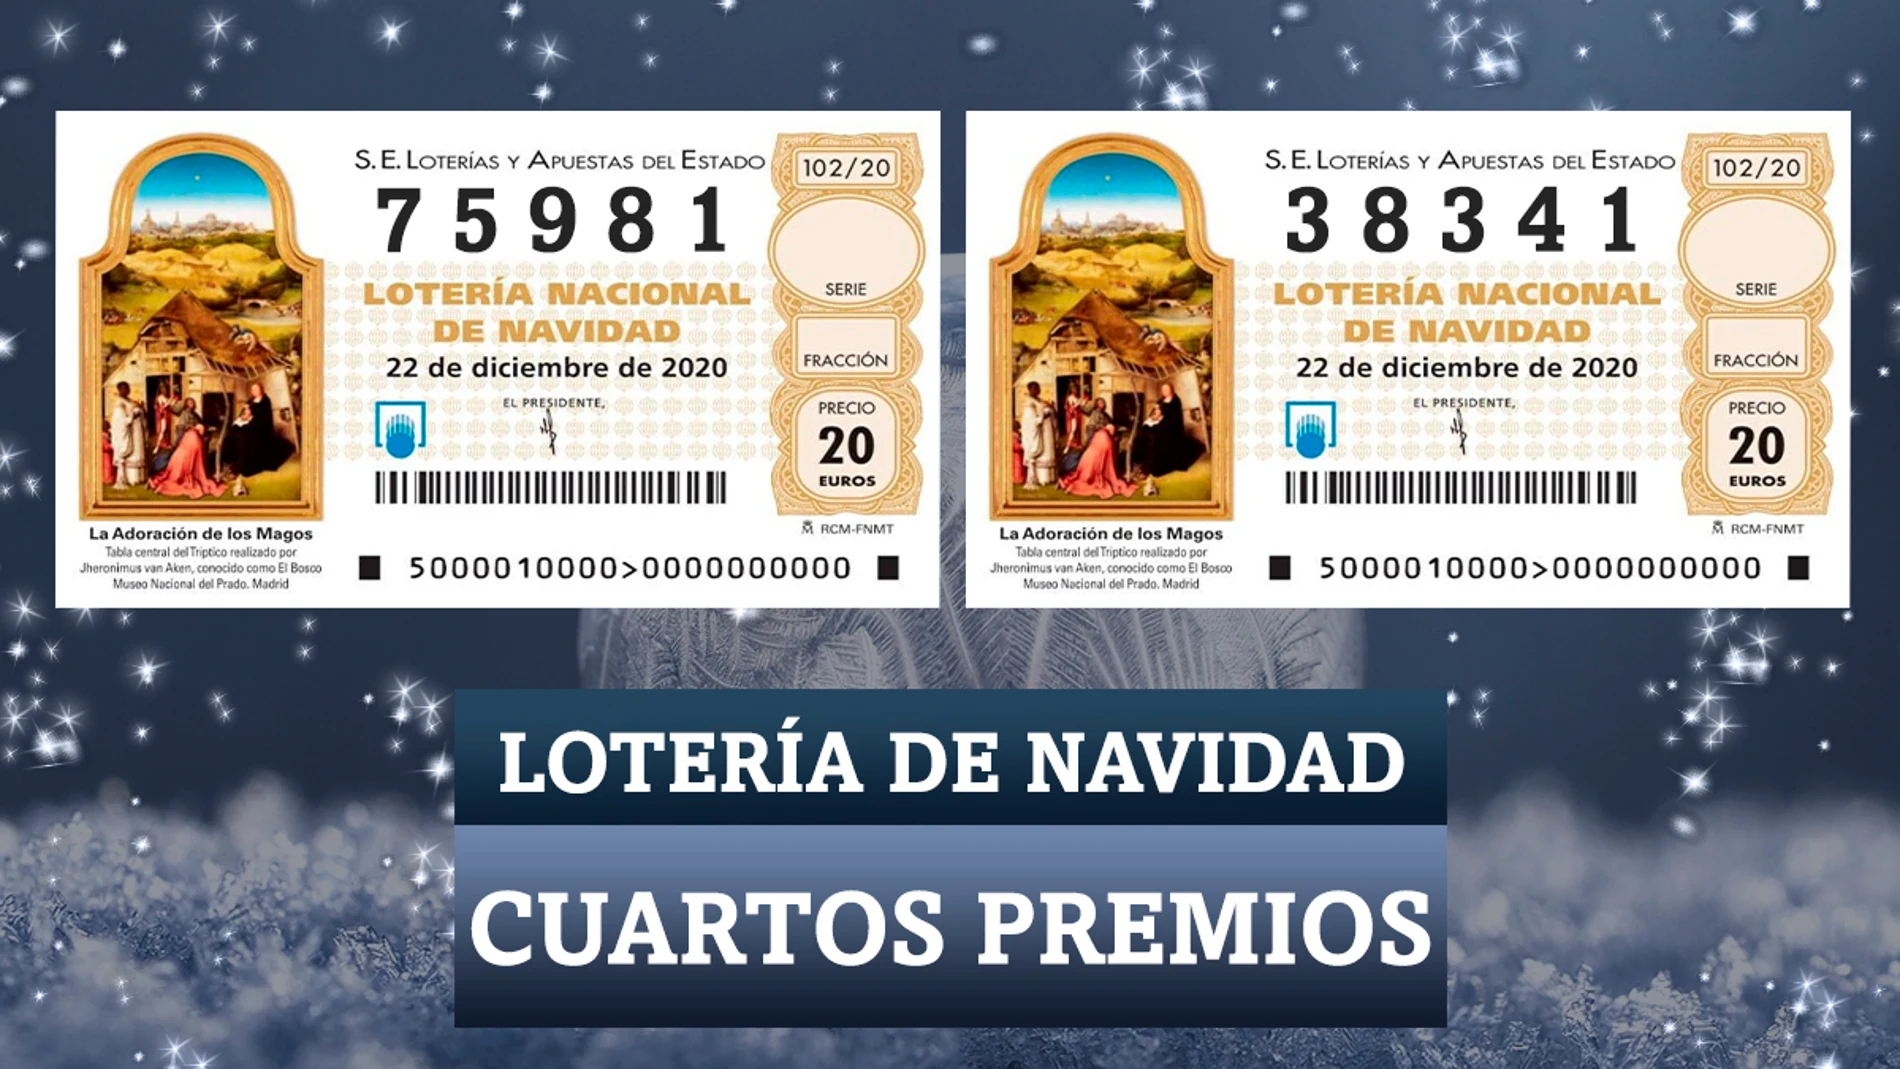 Los cuartos premios de la Lotería de Navidad 2020